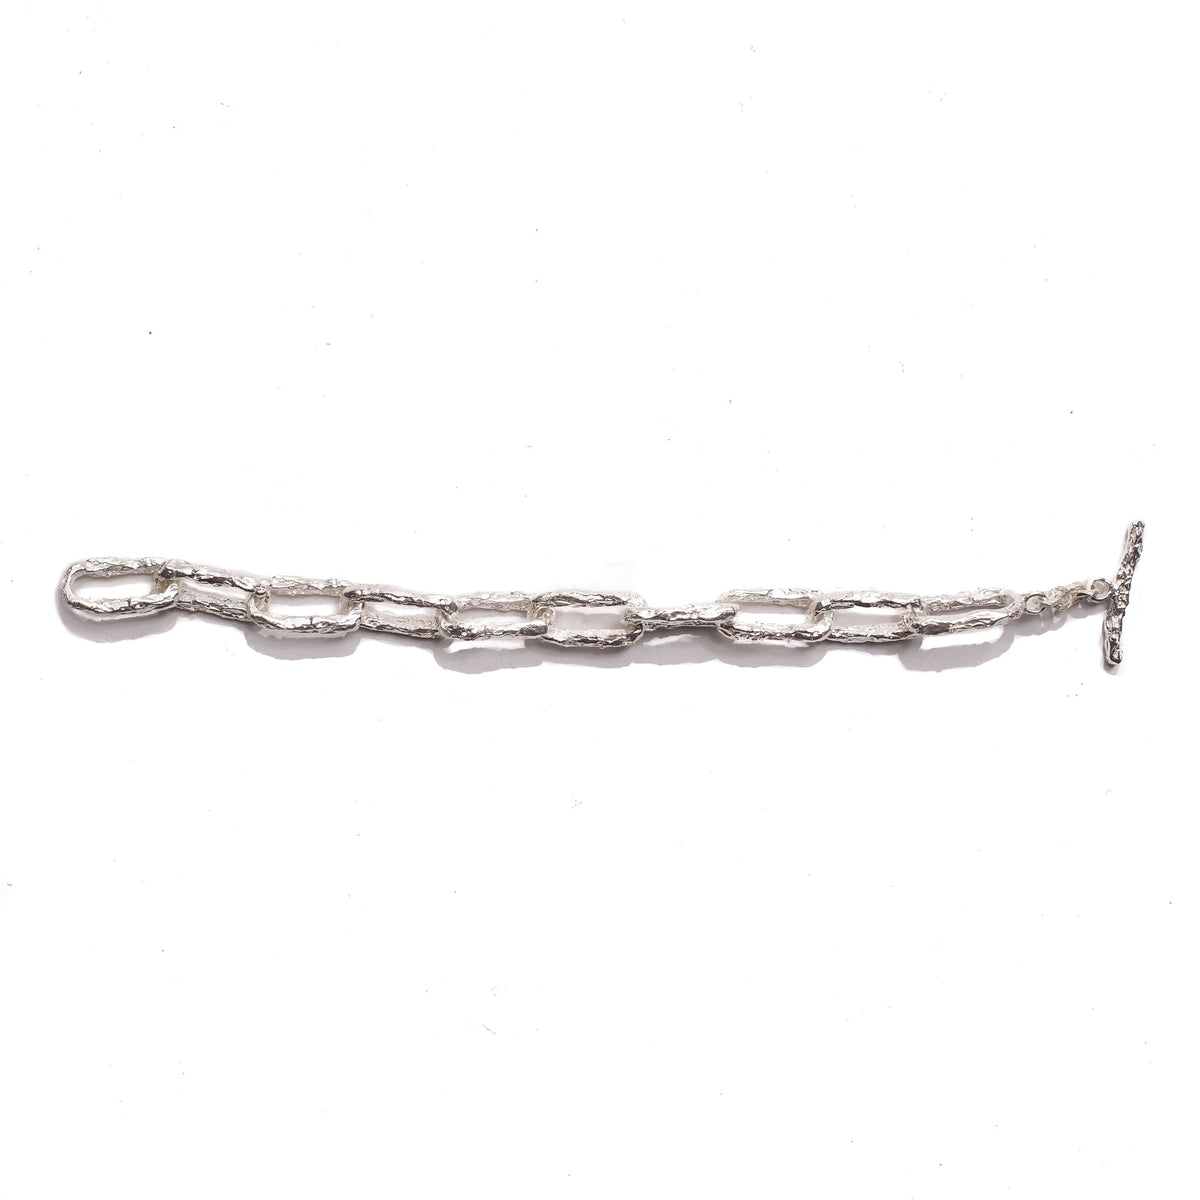 Ula x Chain Link Bracelet | 925 Sterling Silver 19 cm - 7.48 in